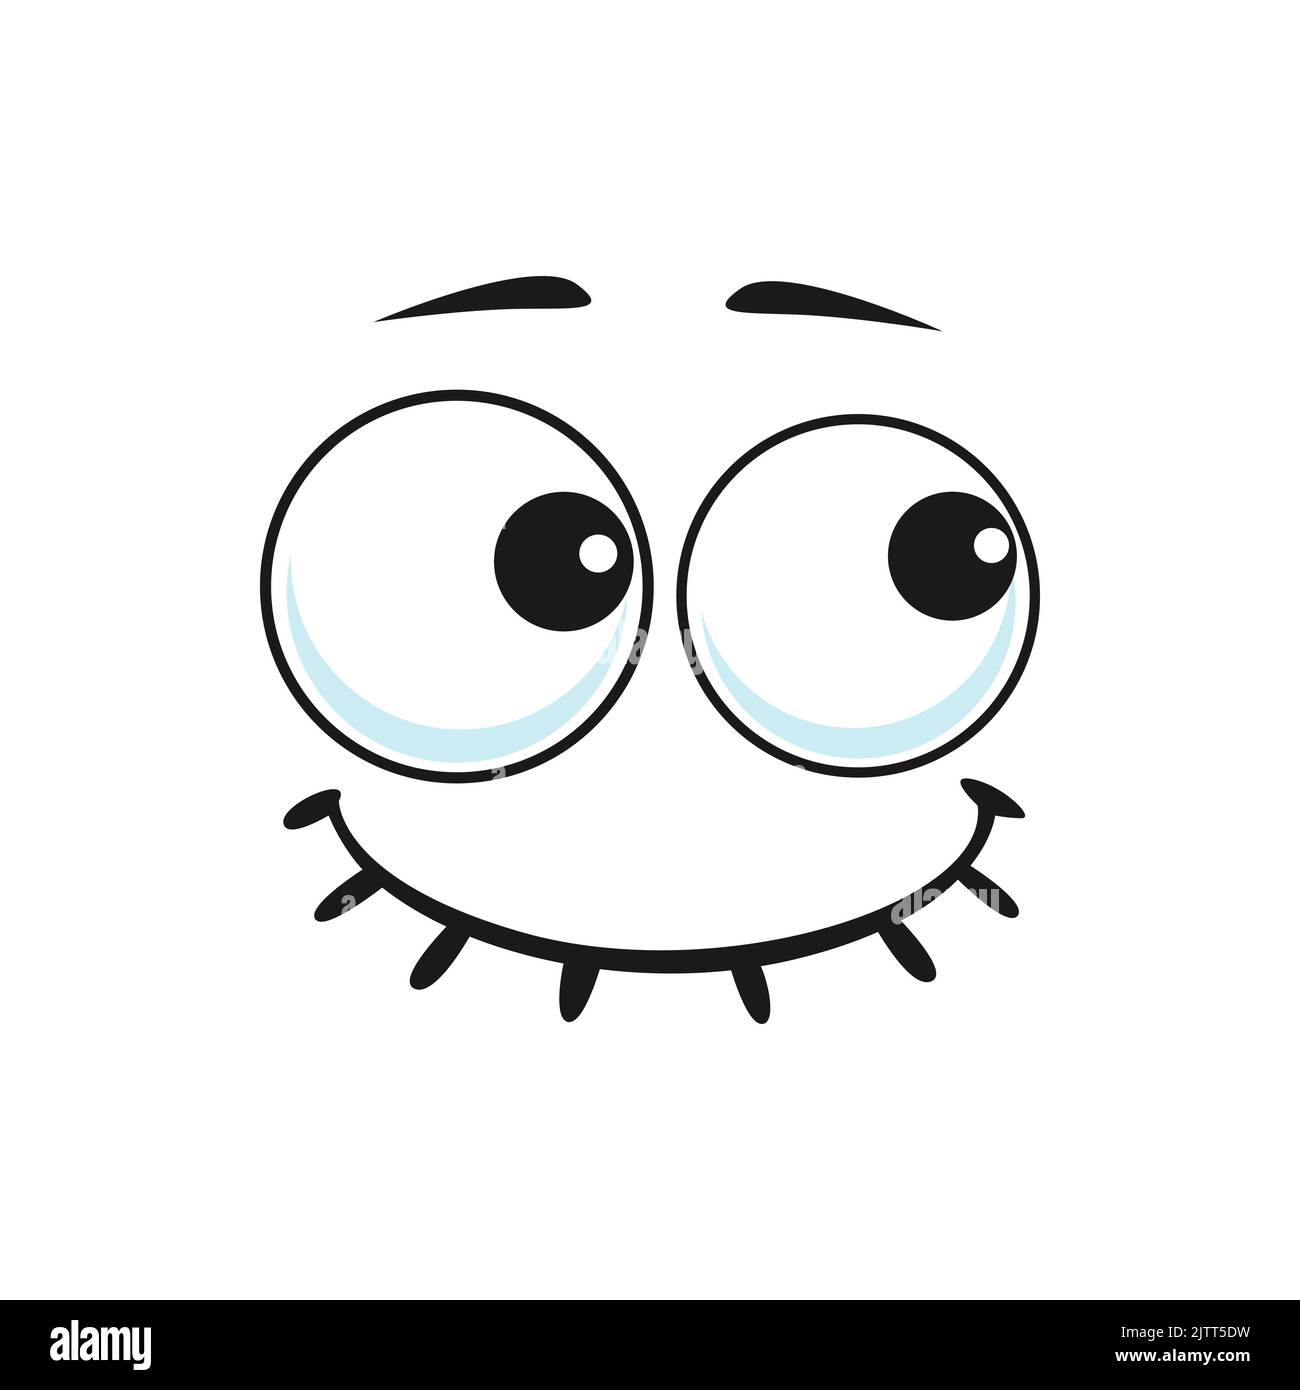 Cartone animato sorridente faccia vettore divertente emoji con amichevole scenario sorriso, bocca cucita e gli occhi rotondi. Felice espressione facciale, sentimenti positivi carattere isolato Illustrazione Vettoriale